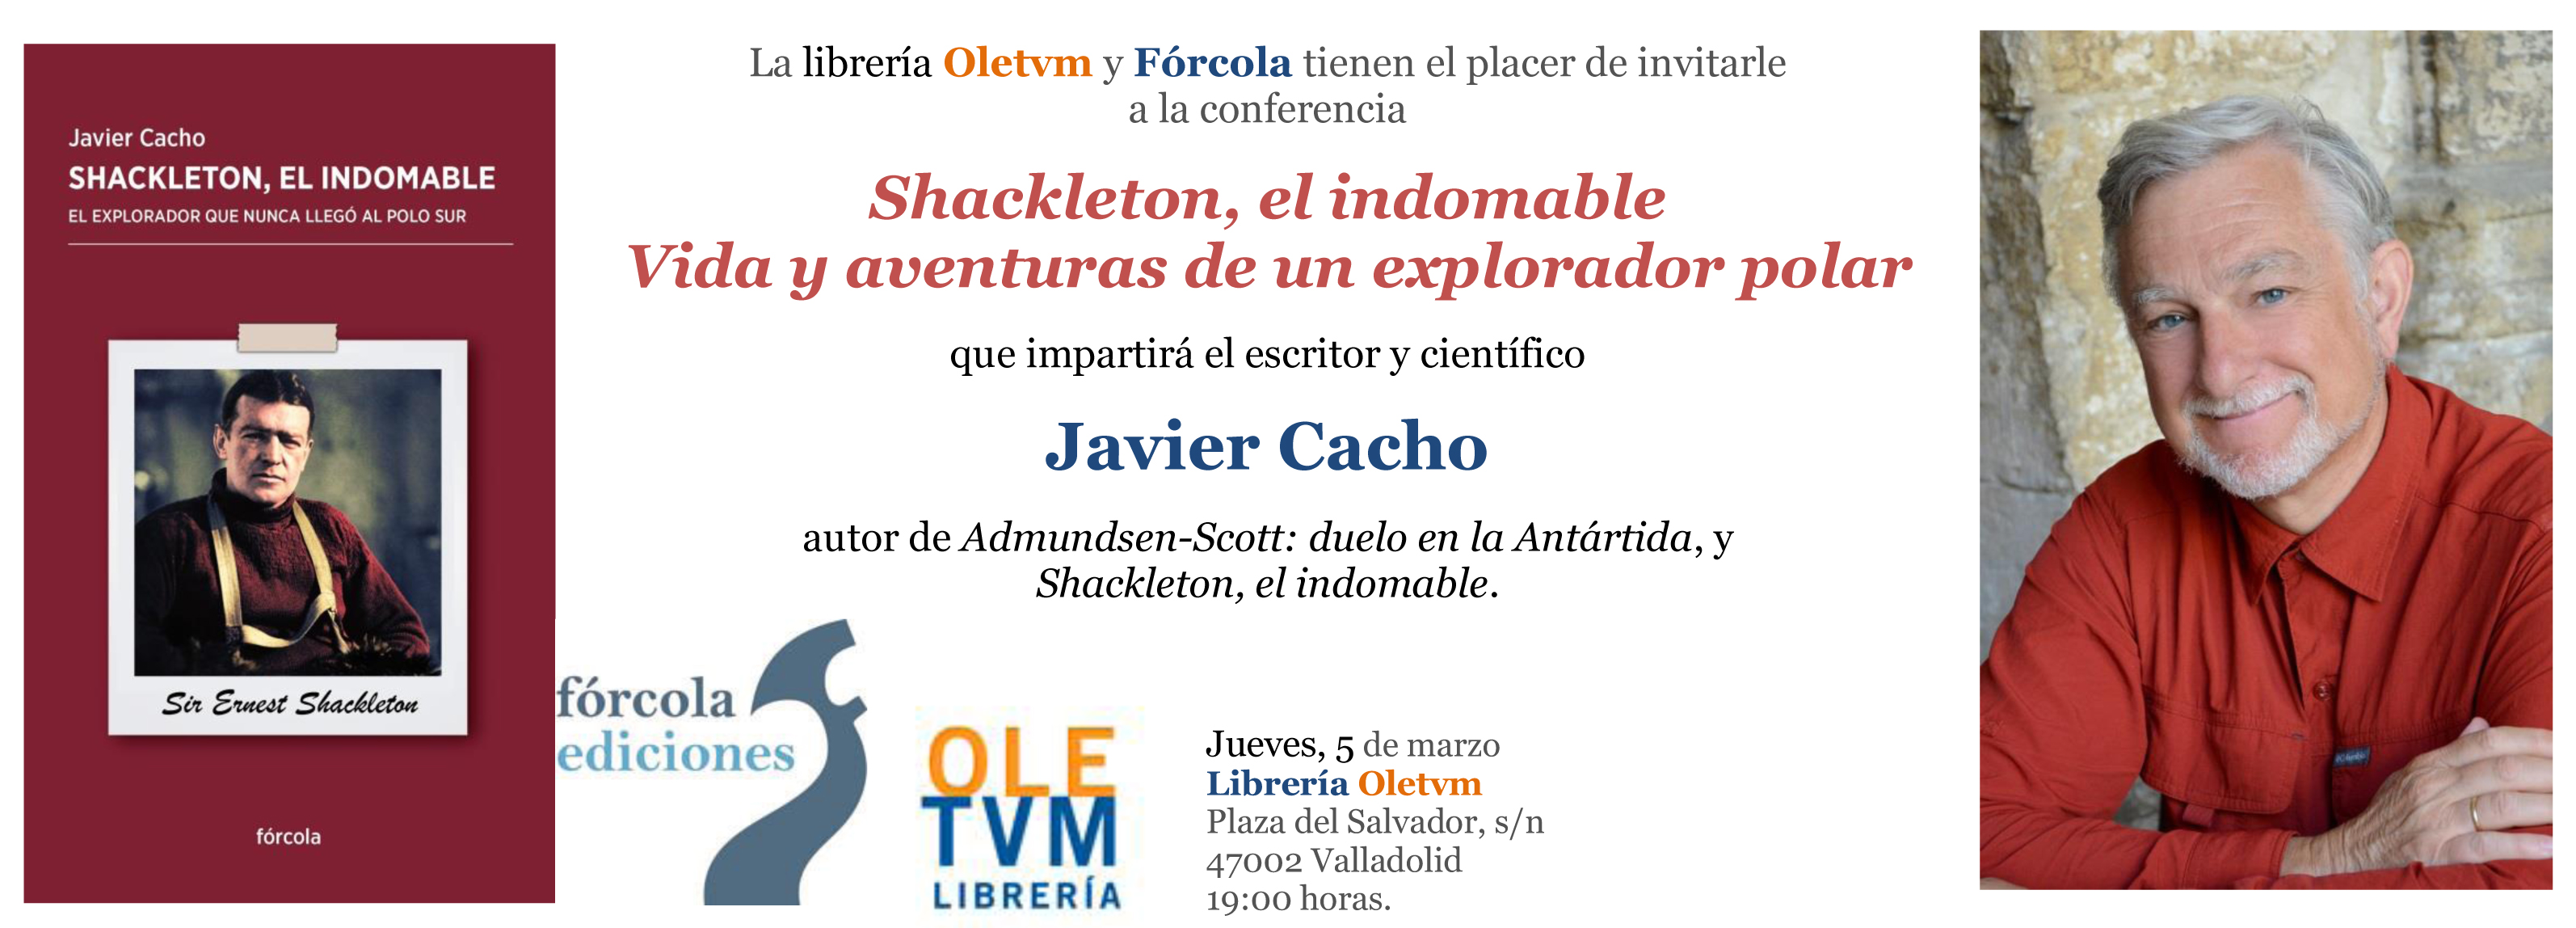 Invitacion_presentacion_Shackleton_Oletvm